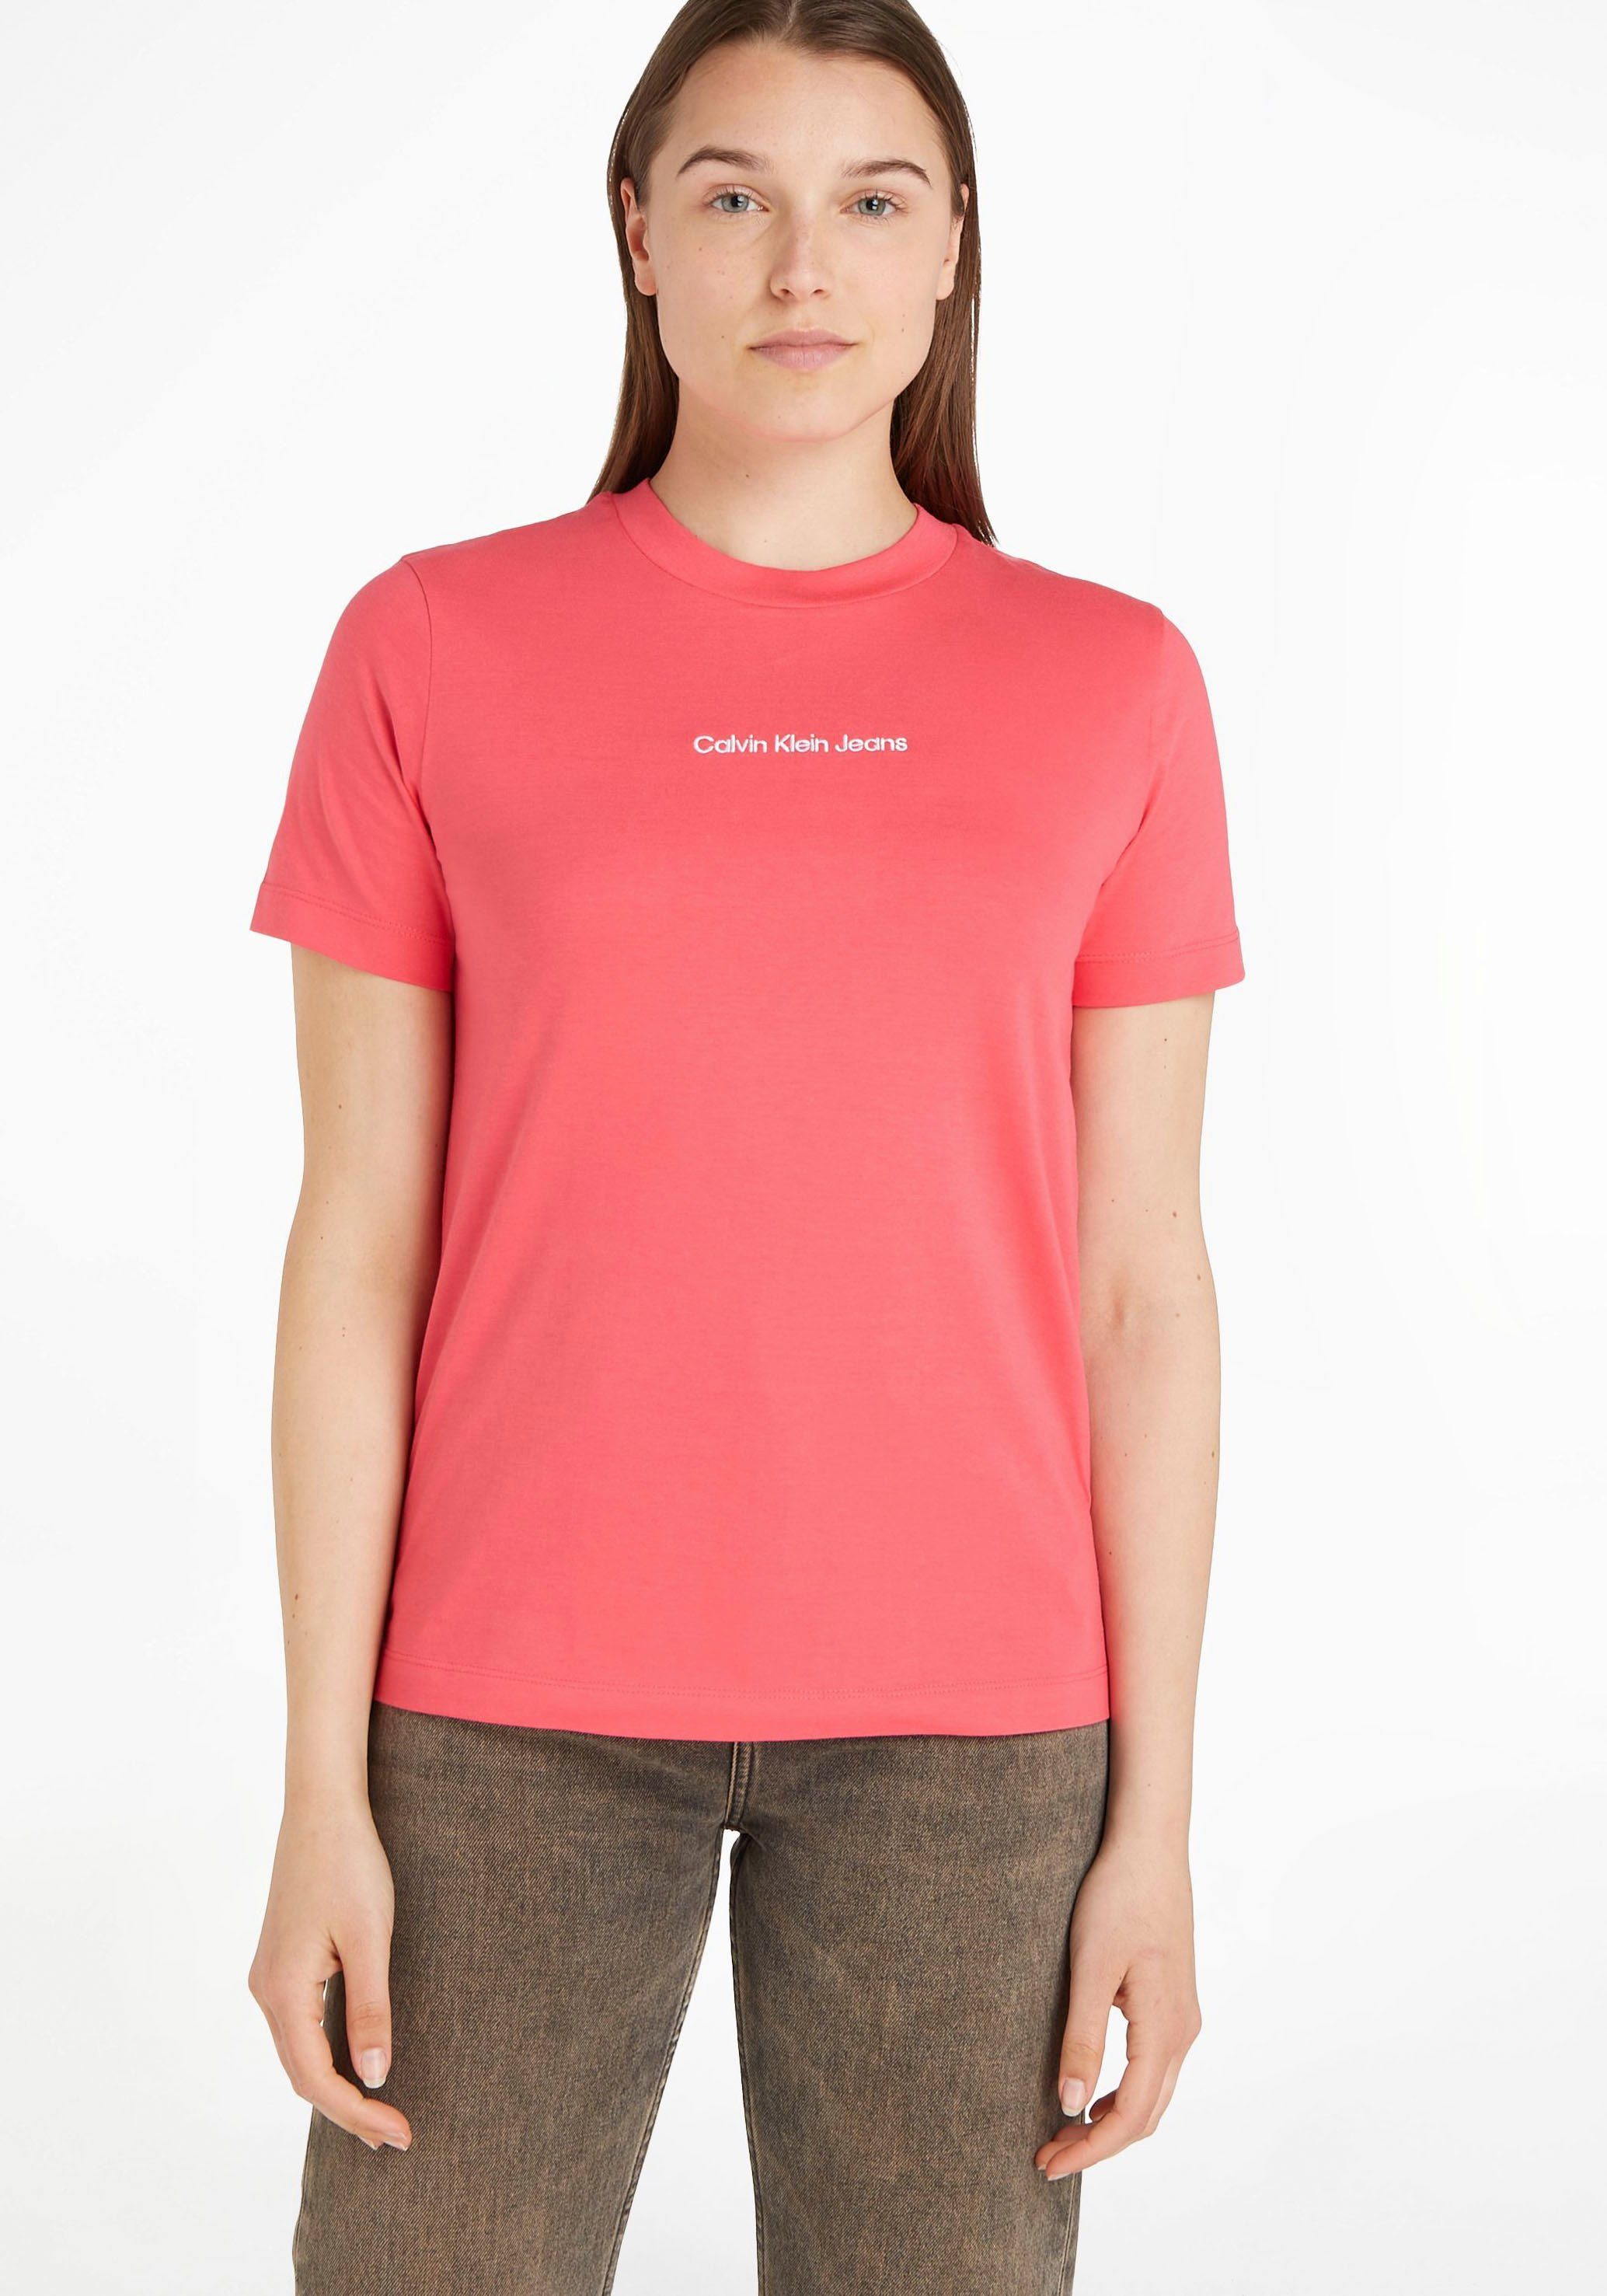 aus reiner T-Shirt Jeans Klein pink Calvin Baumwolle